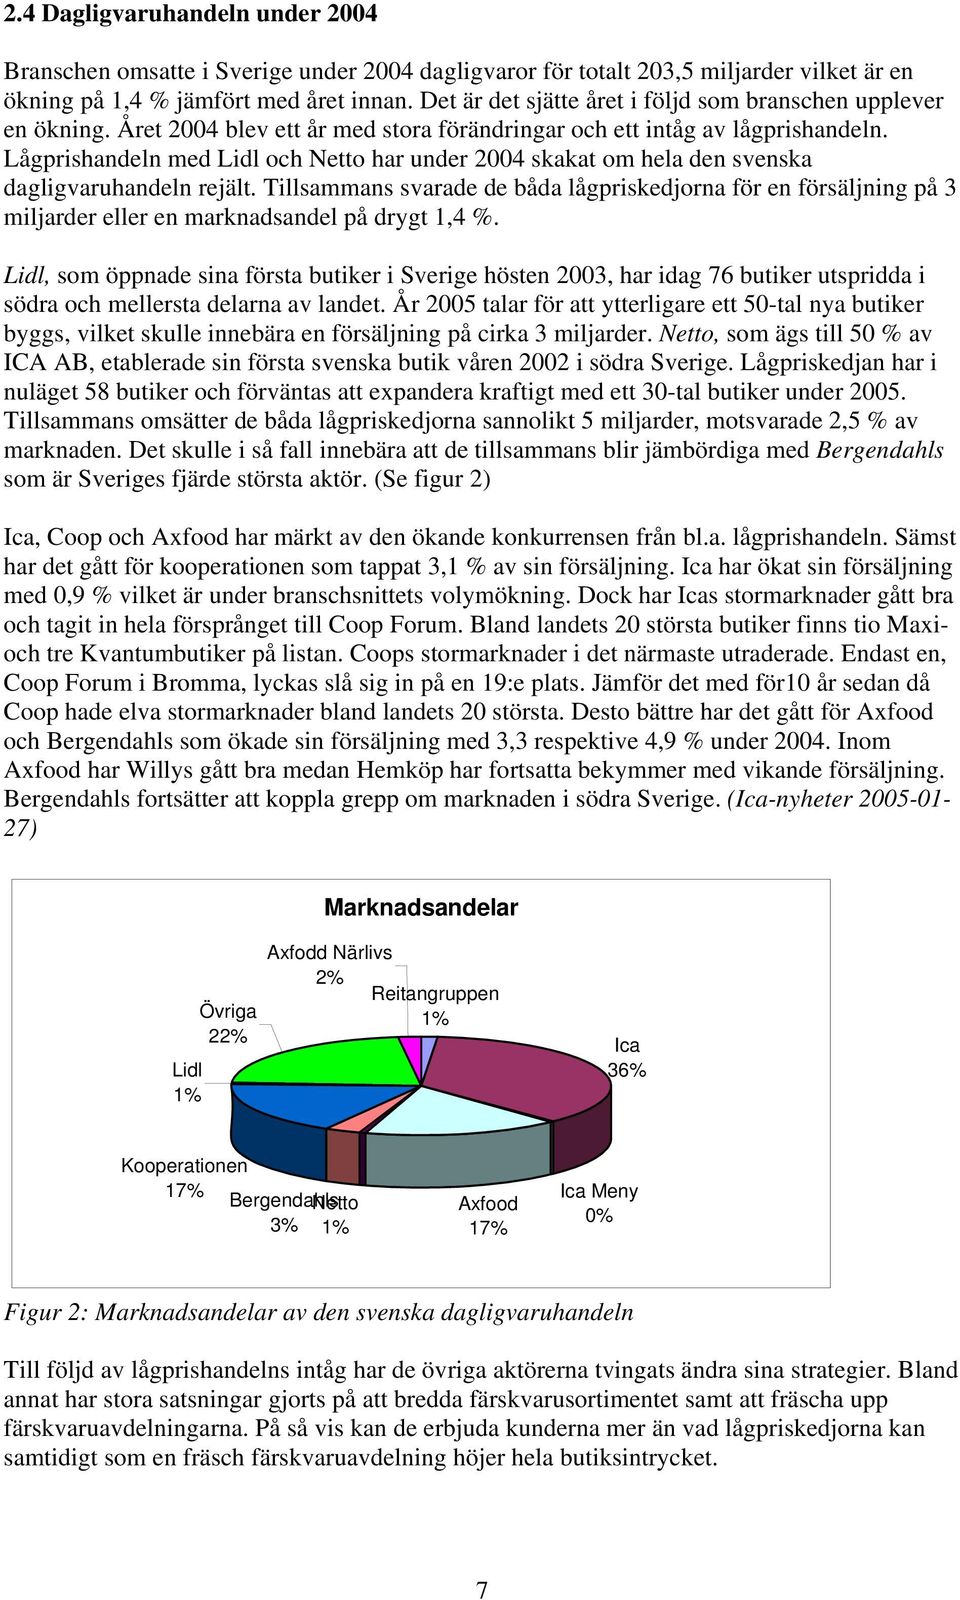 Lågprishandeln med Lidl och Netto har under 2004 skakat om hela den svenska dagligvaruhandeln rejält.